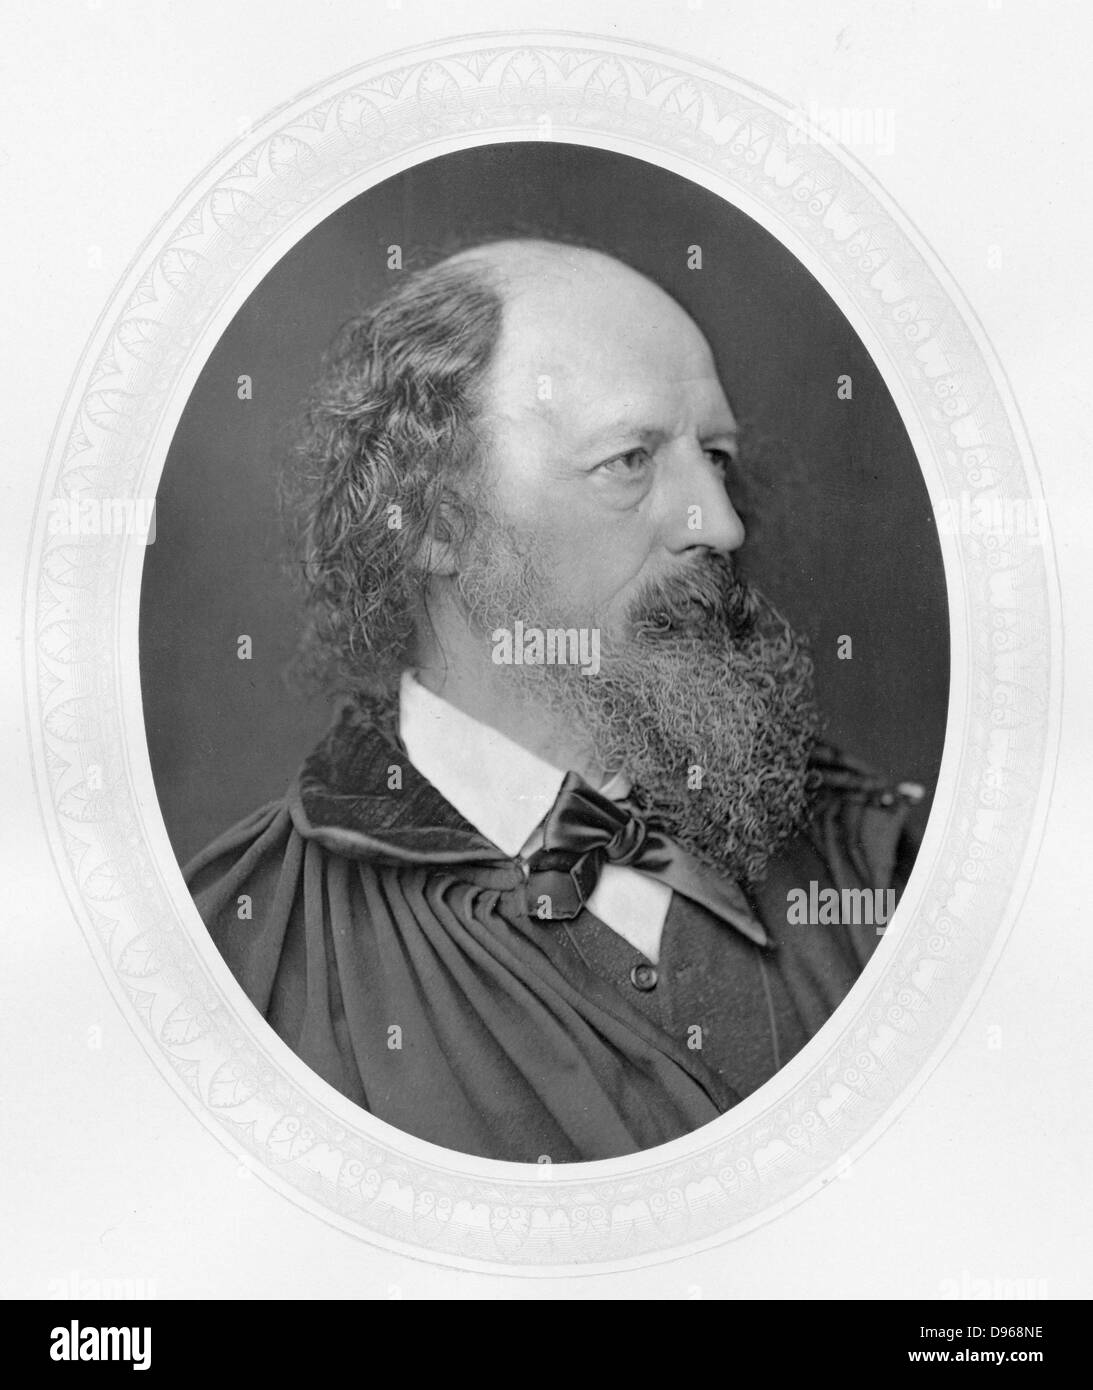 Alfred Tennyson, lst Baron Tennyson (1809-1893) poète anglais. Wordsworth réussi comme poète lauréat en 1850. Photographie publiée c1880. Woodburytype Banque D'Images